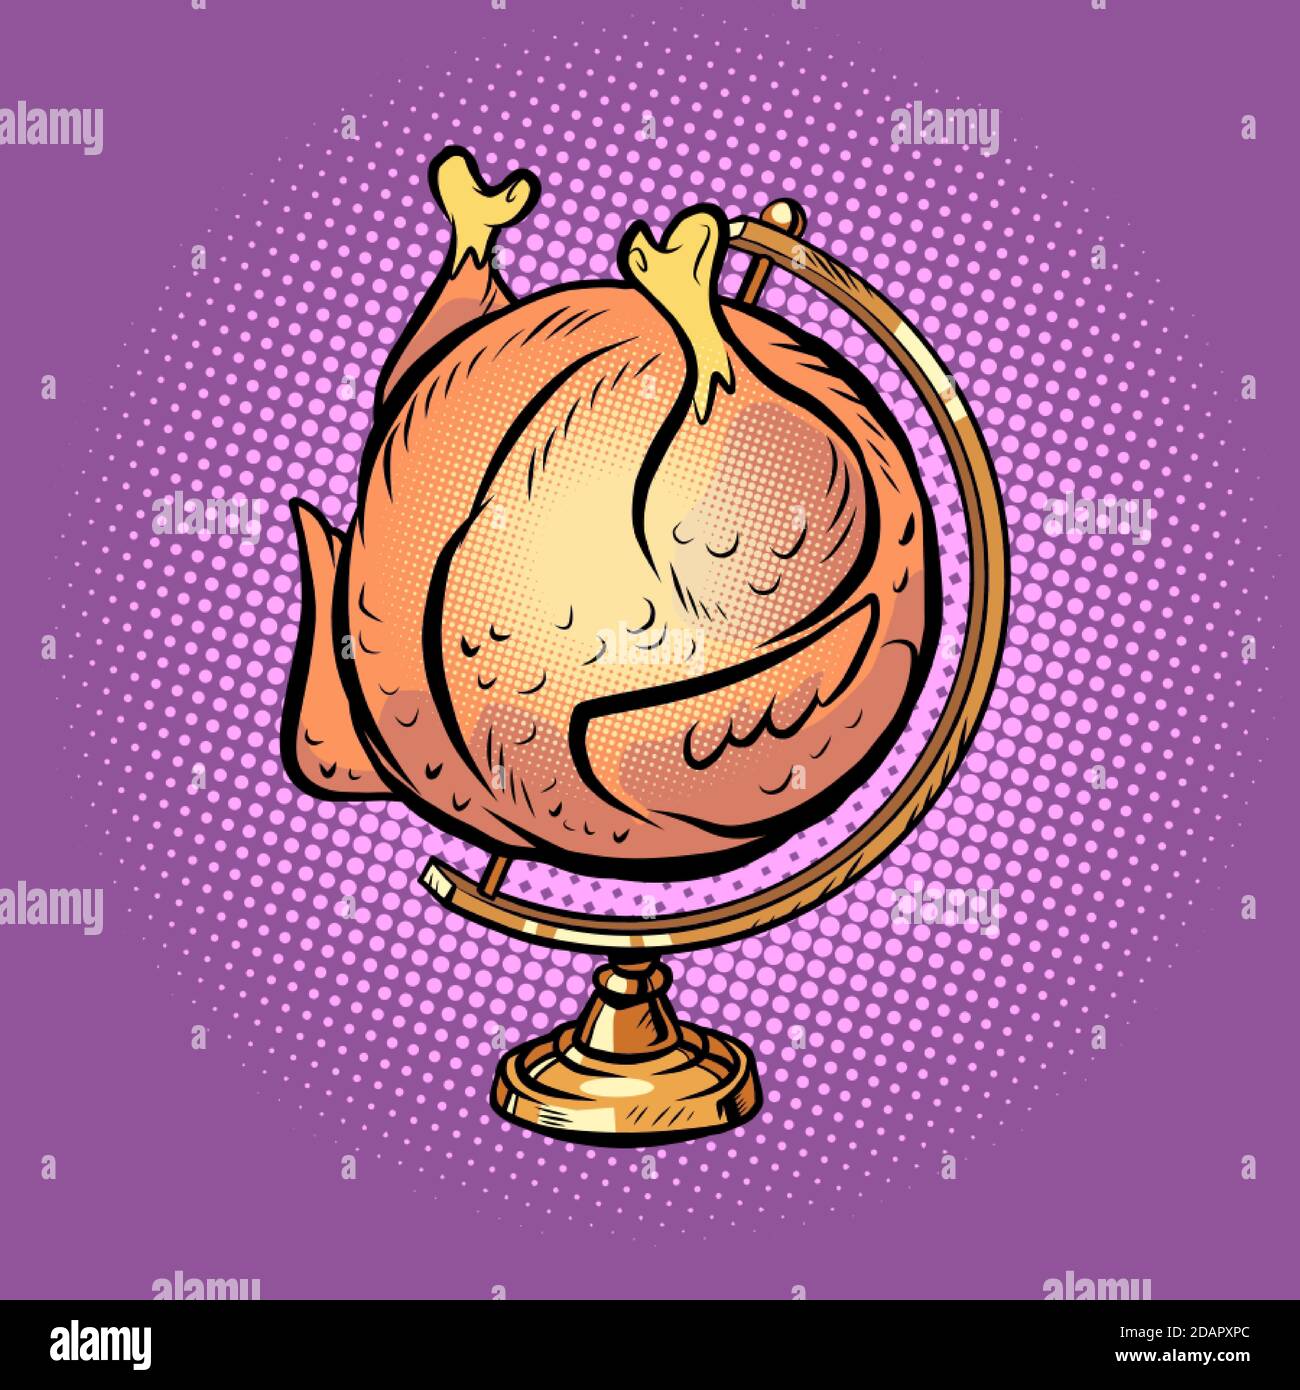 poulet grillé du globe sur une broche Illustration de Vecteur